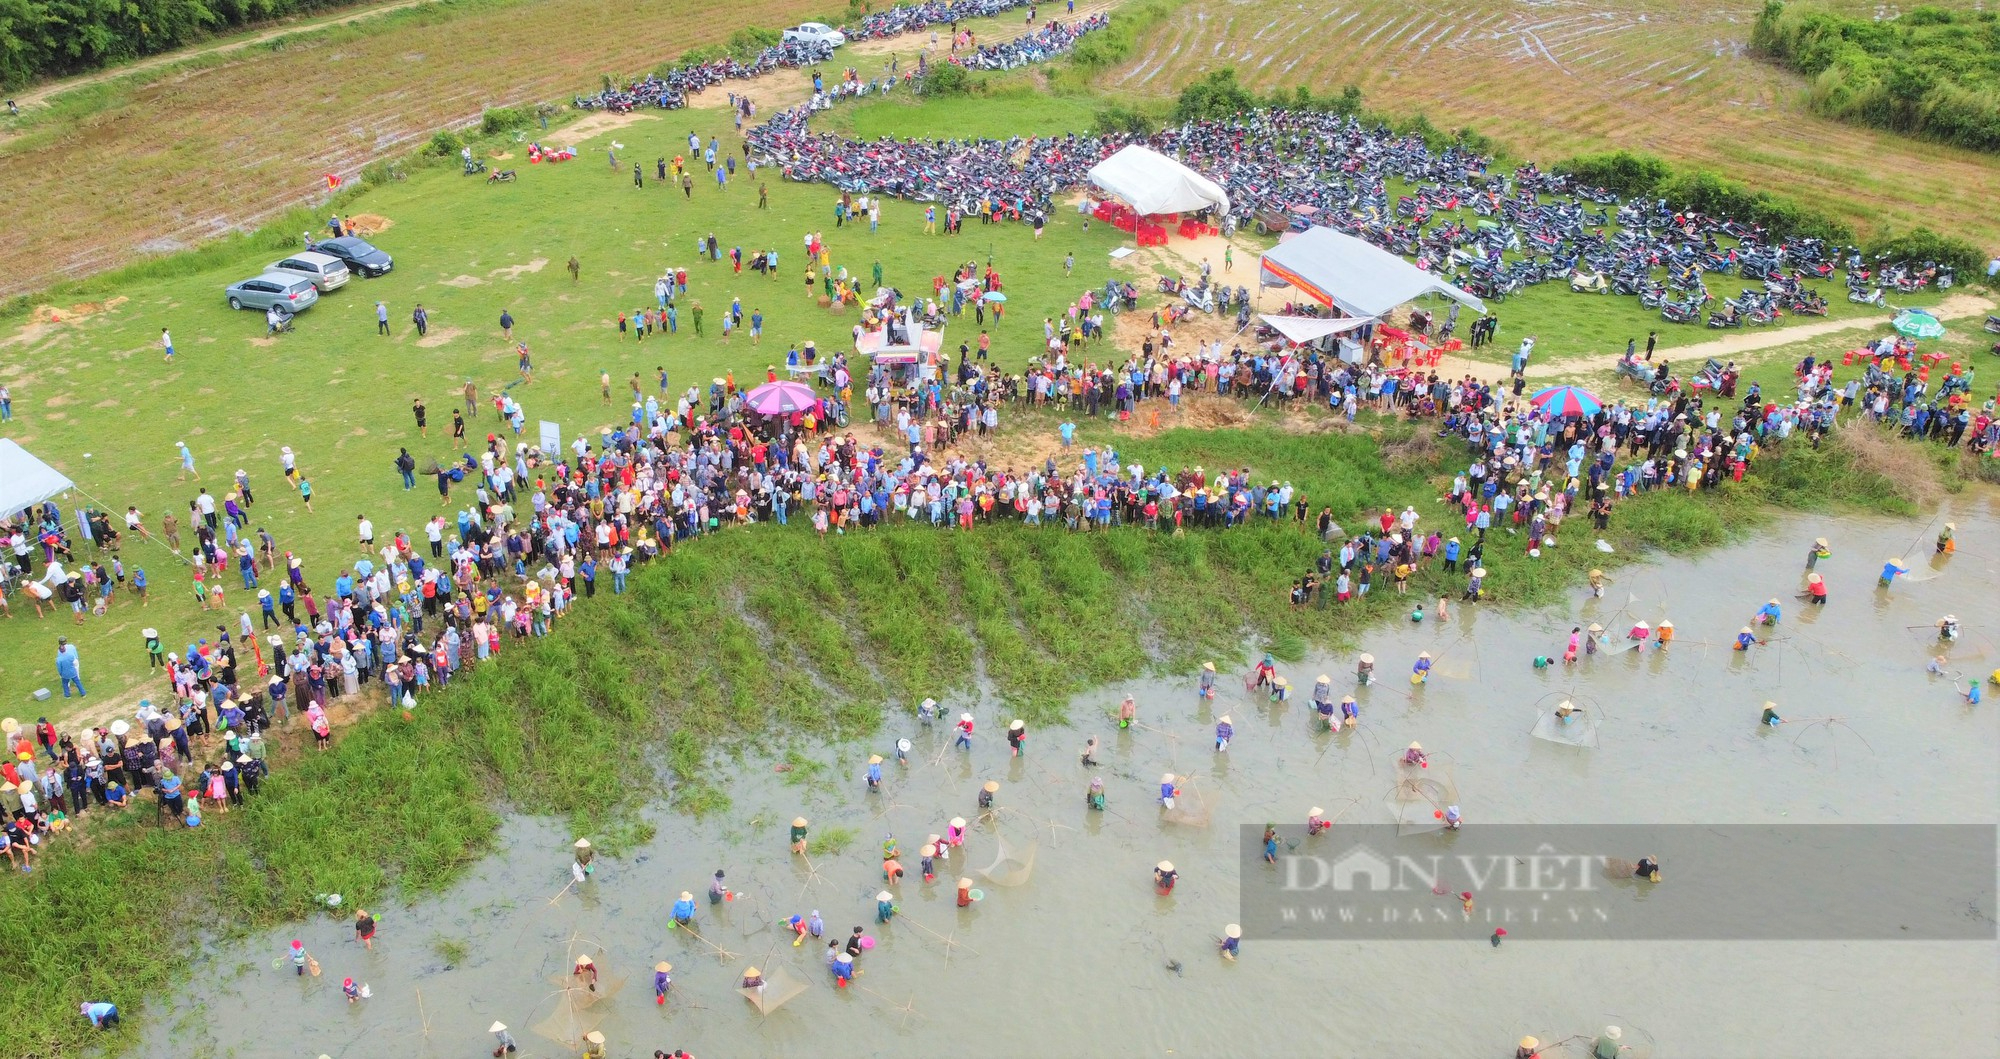 Ảnh – Clip: Hàng nghìn người dân Hà Tĩnh lội nước cầm nơm, tham gia lễ hội bắt cá truyền thống - Ảnh 2.